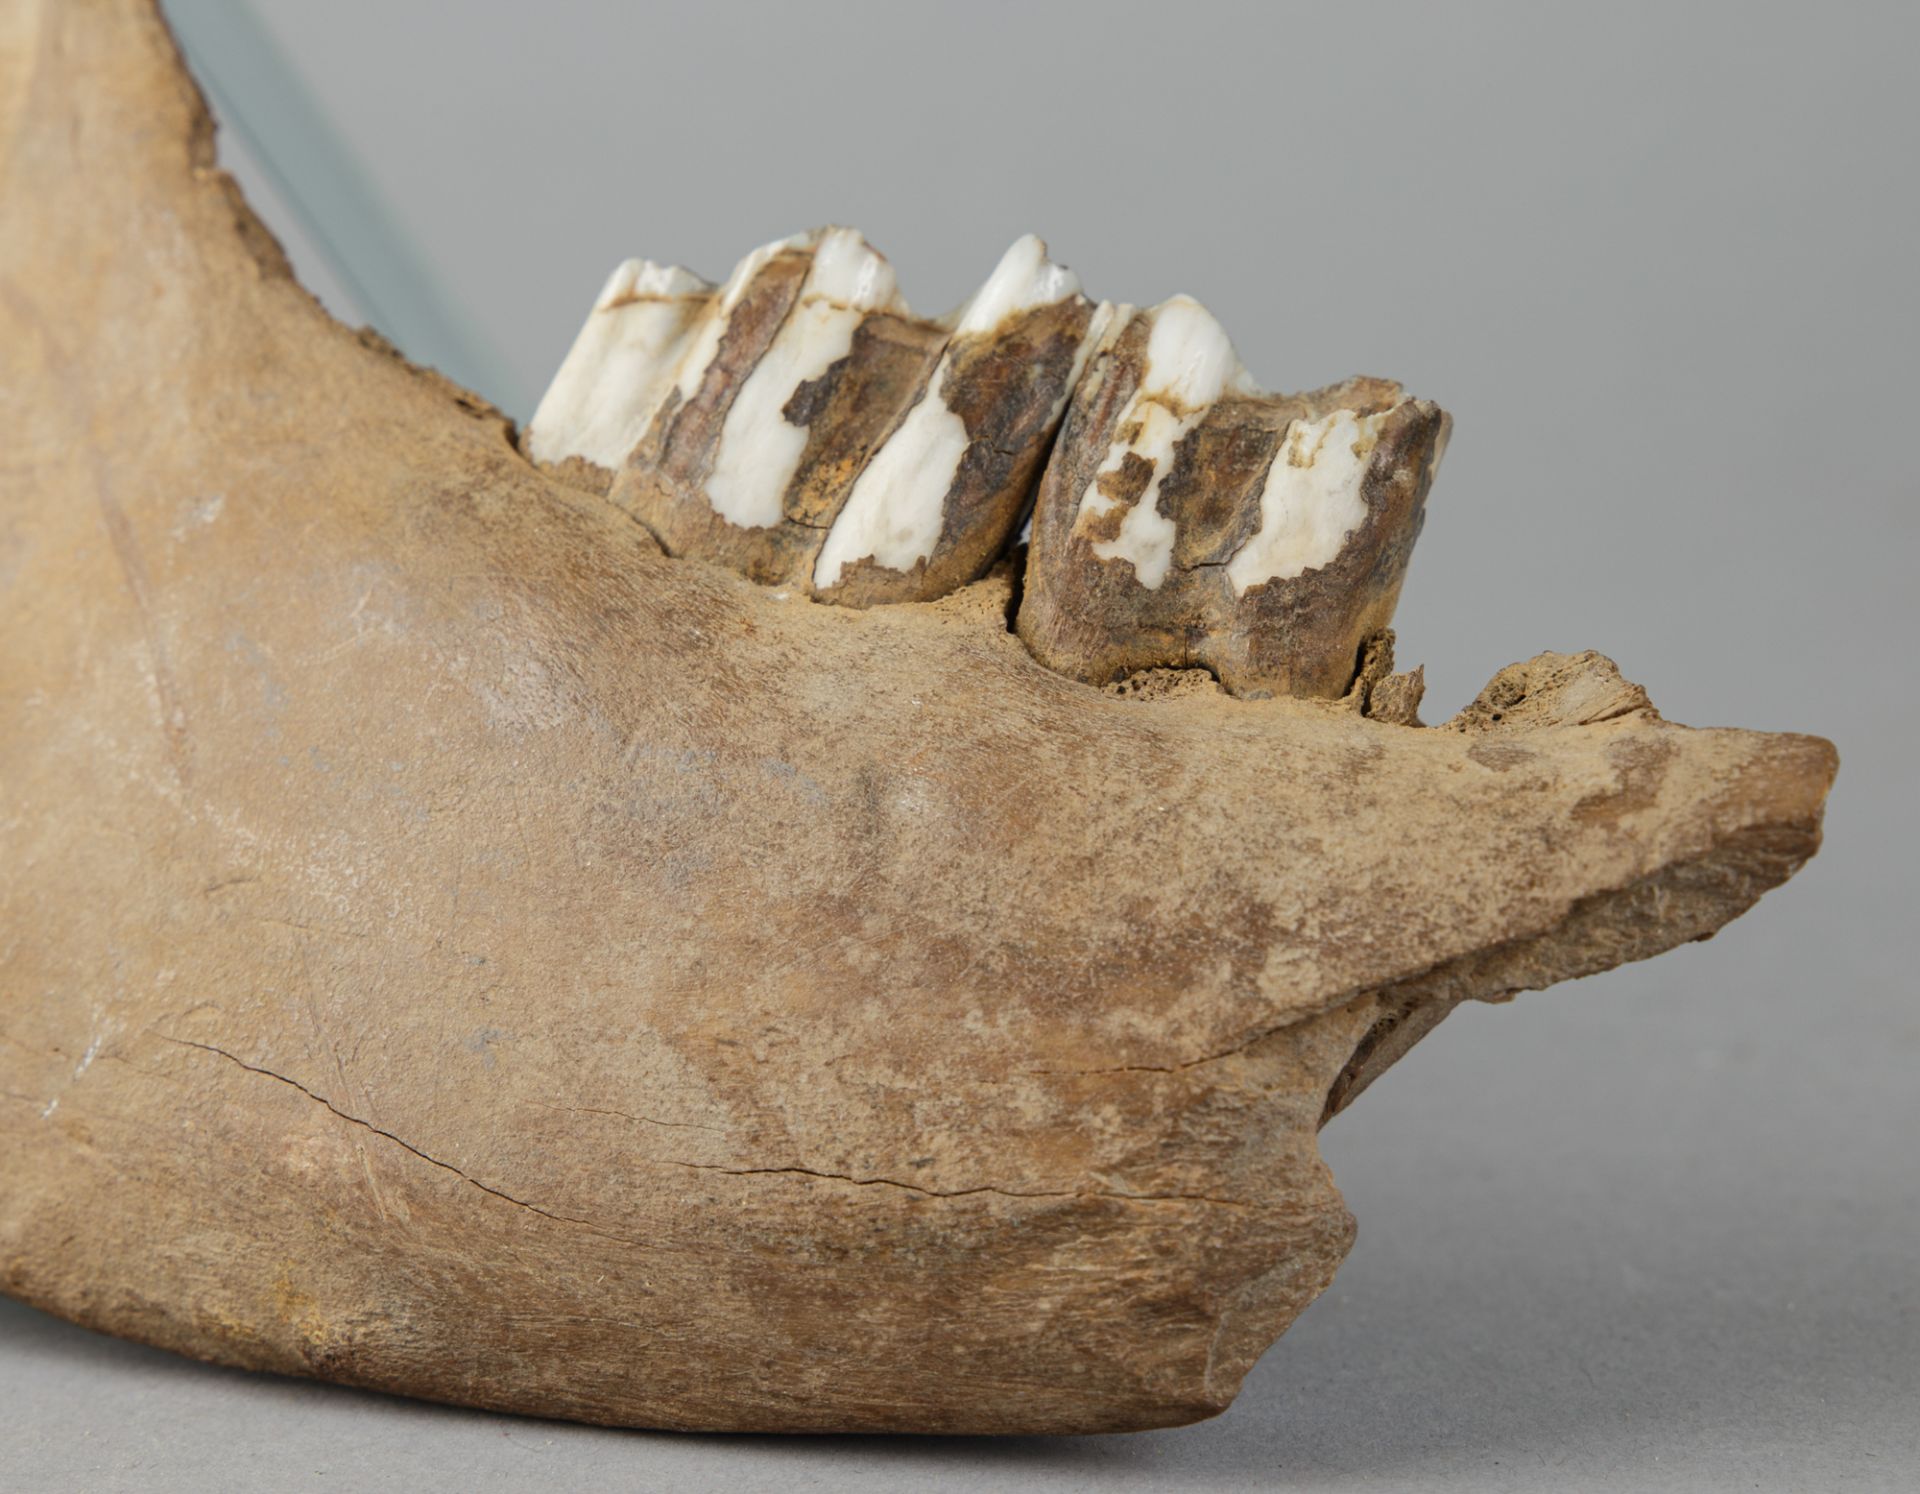 Fossiles Teilstück des Unterkiefers eines Wisents (europ. Bison) - Image 3 of 4